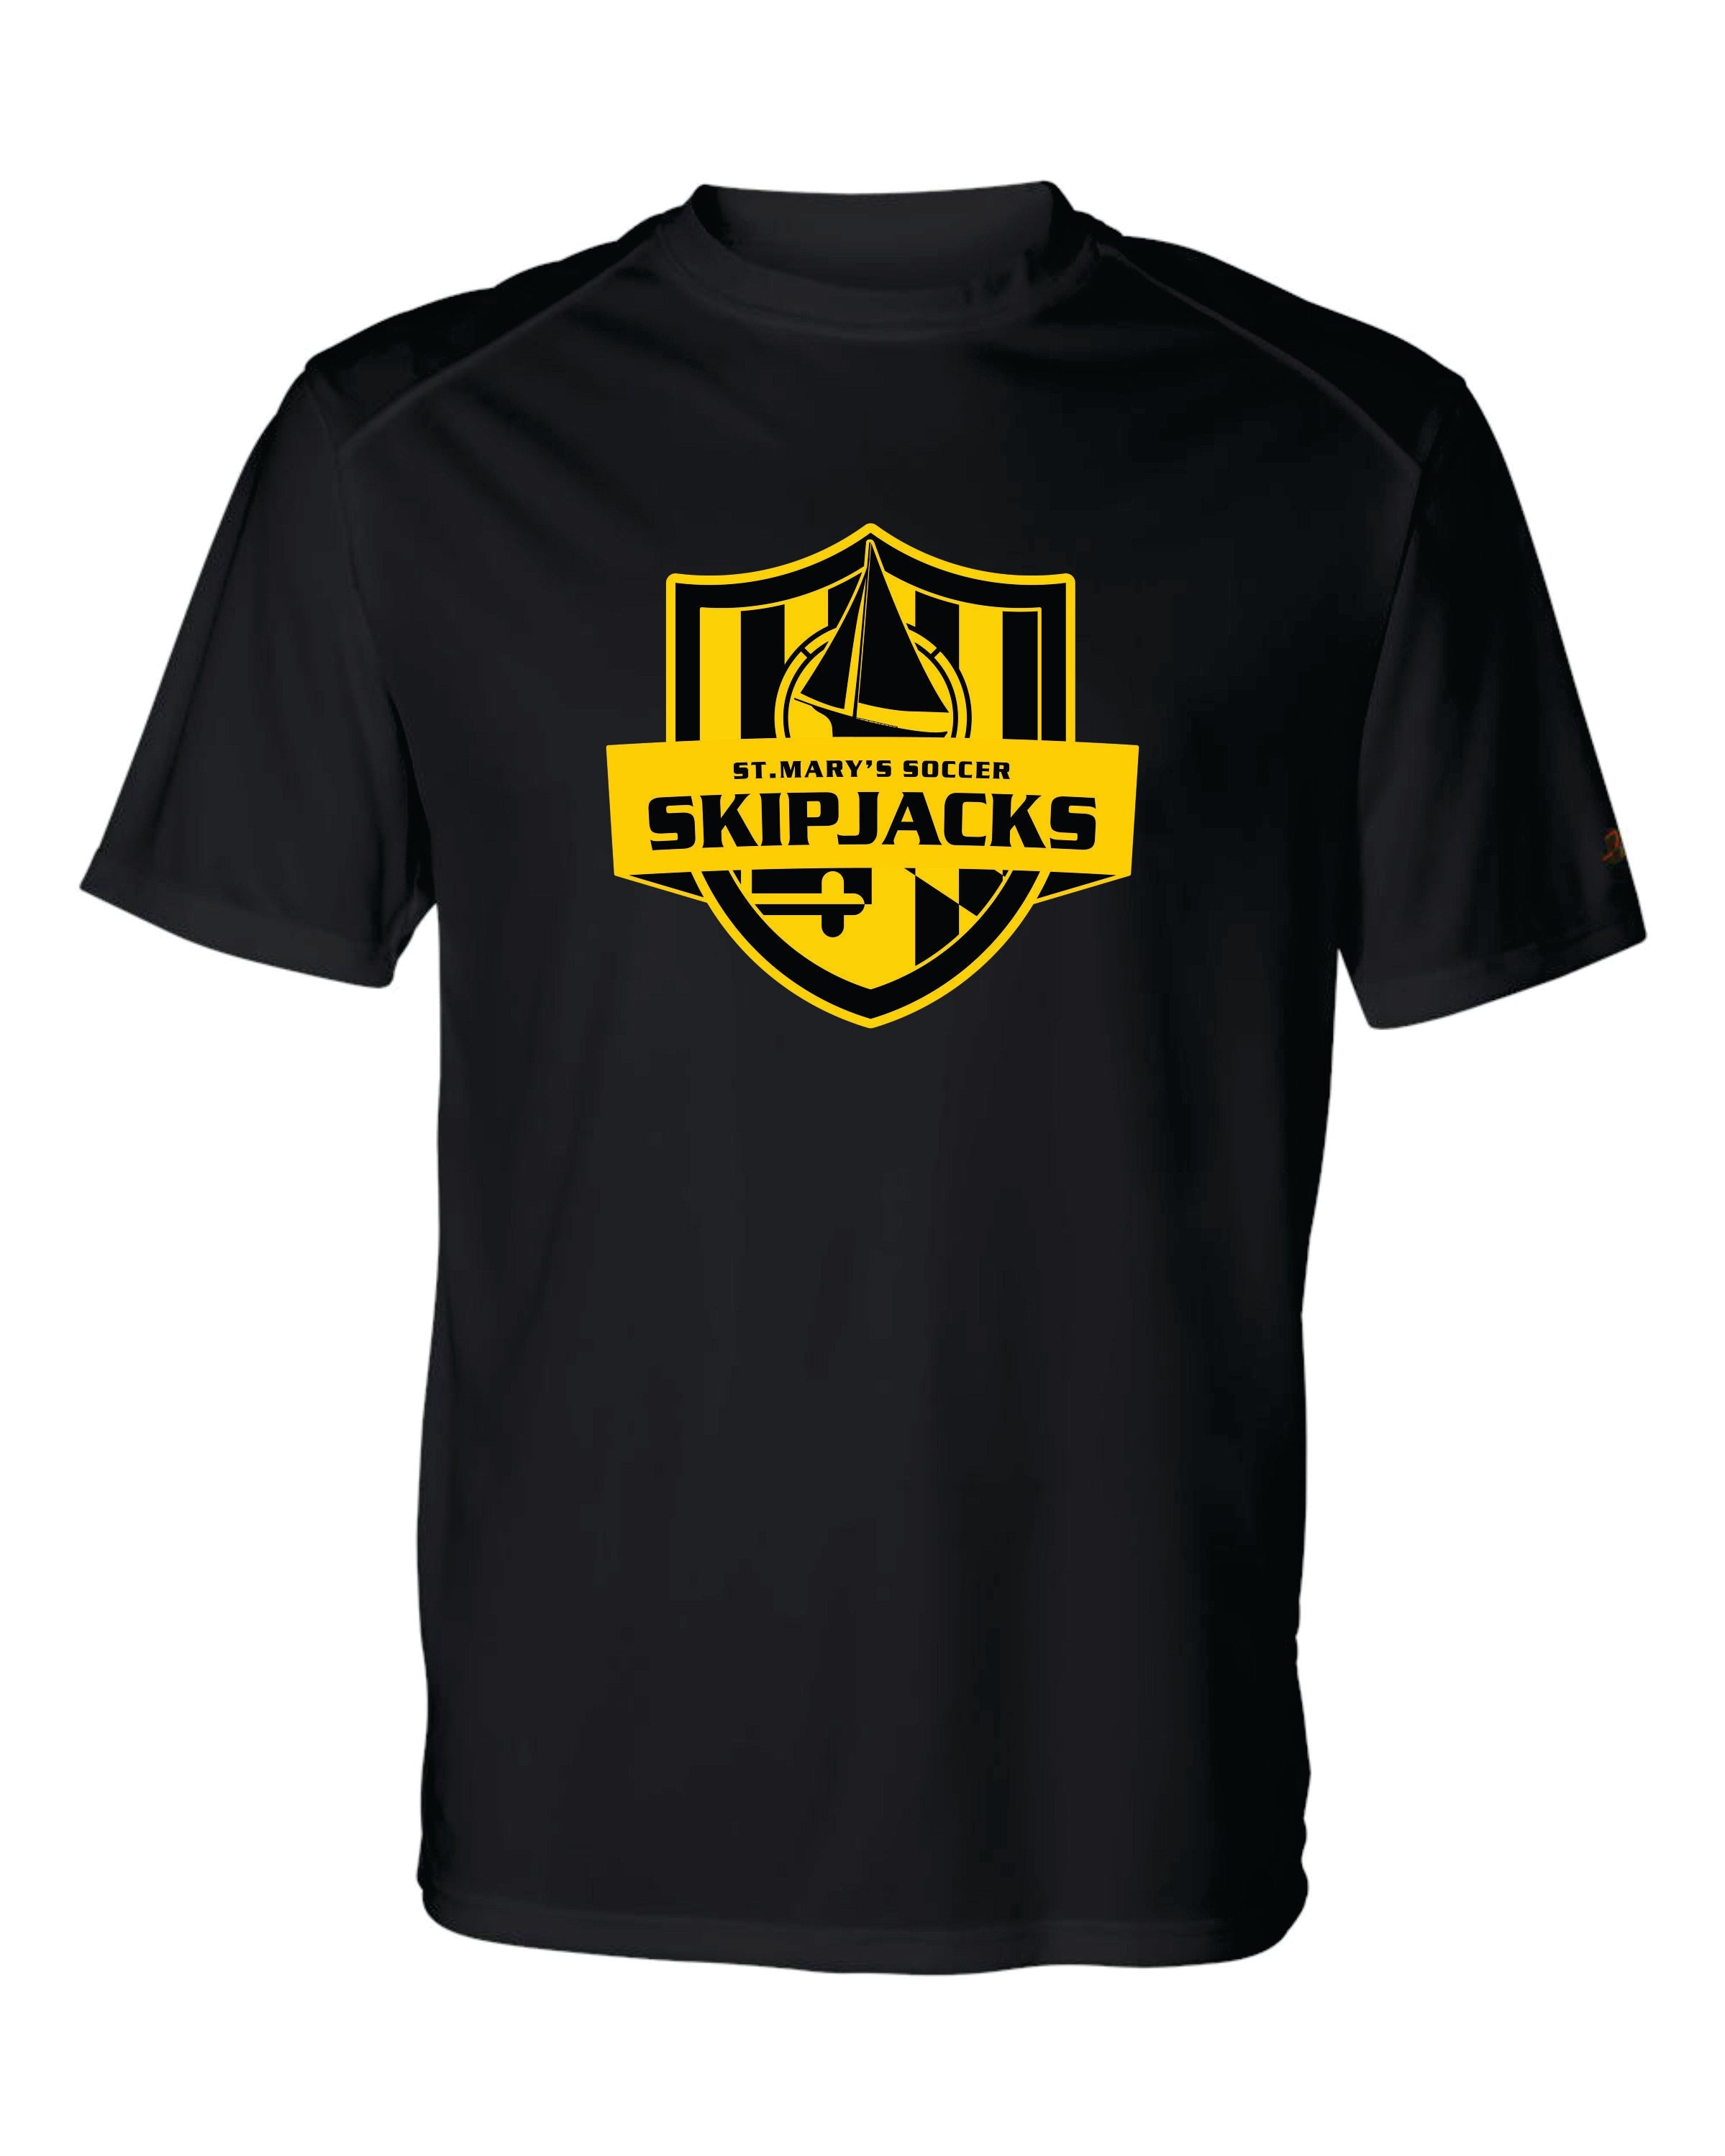 Skipjacks Short Sleeve Dri Fit T shirt - Women